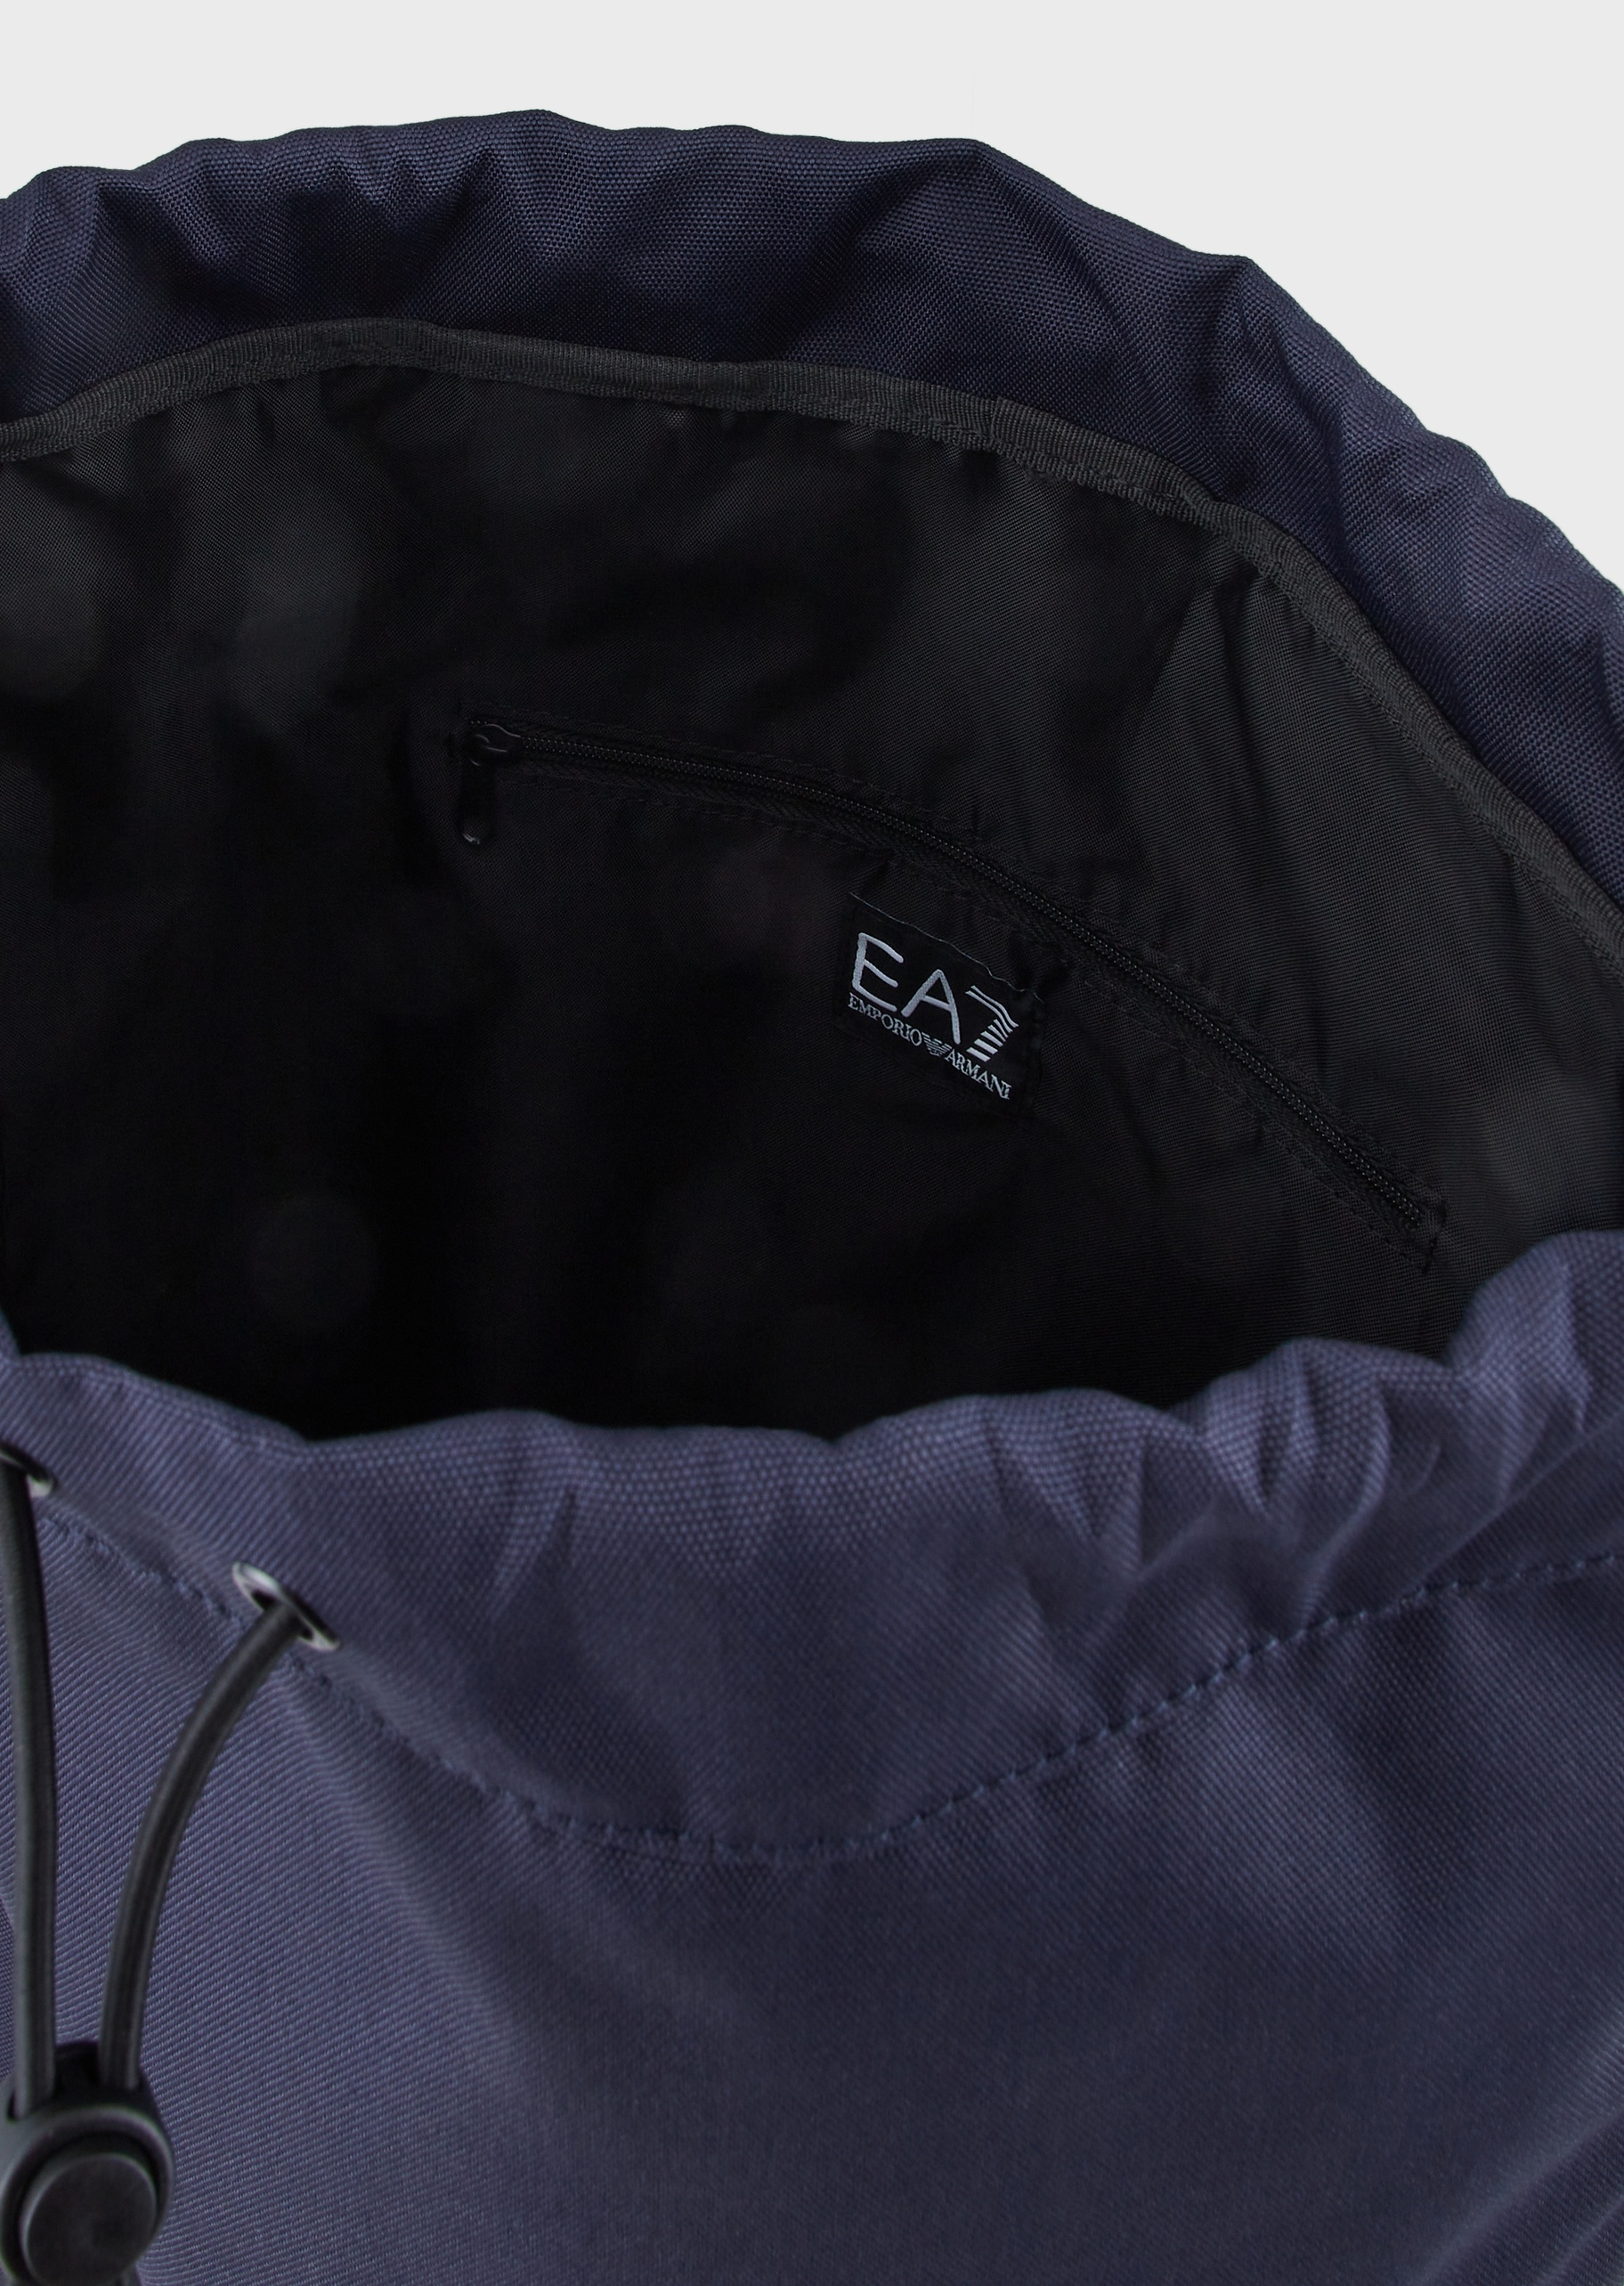 EA7 调节带标识双肩包